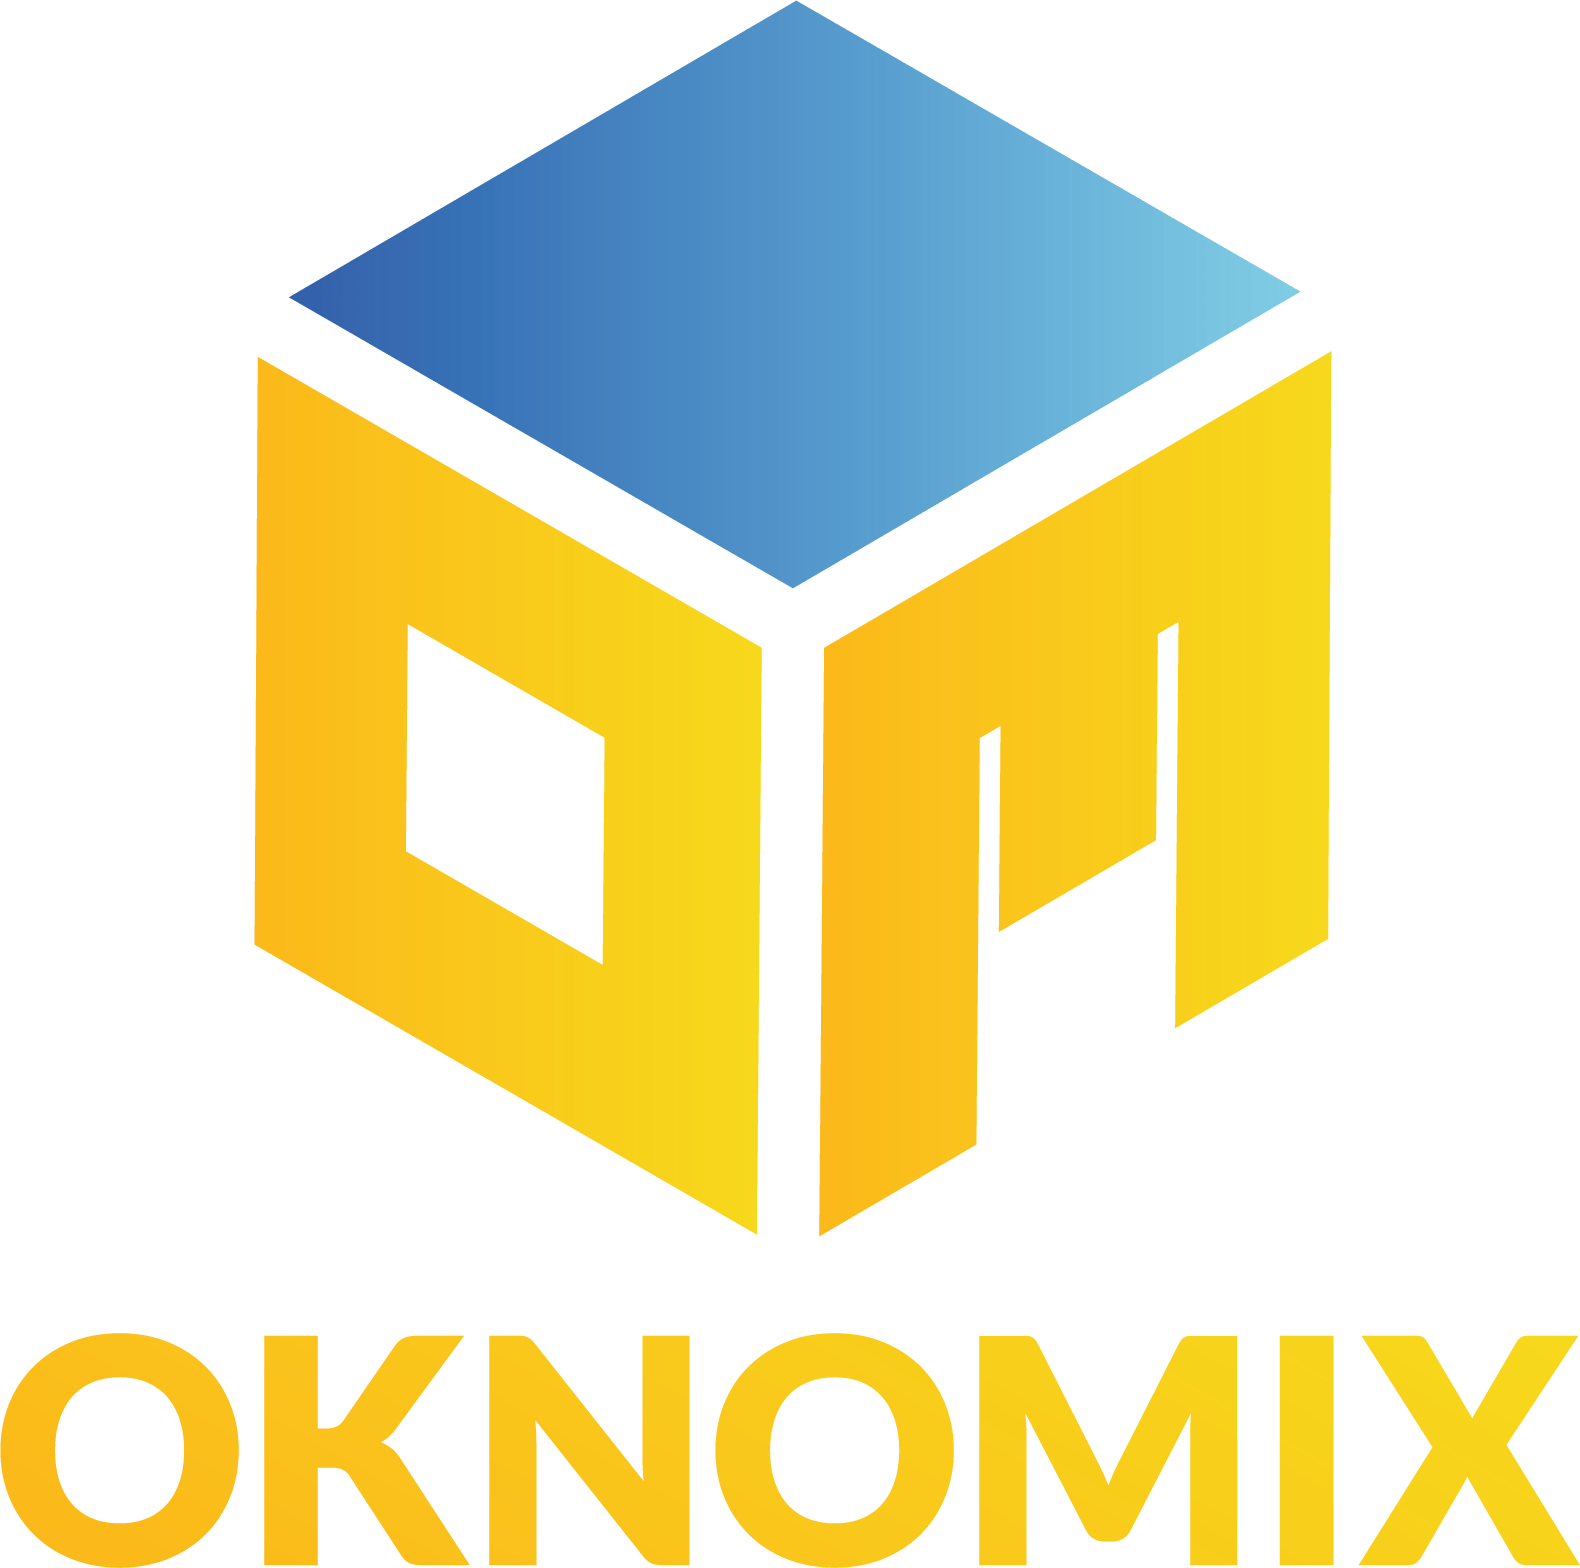 Oknomix